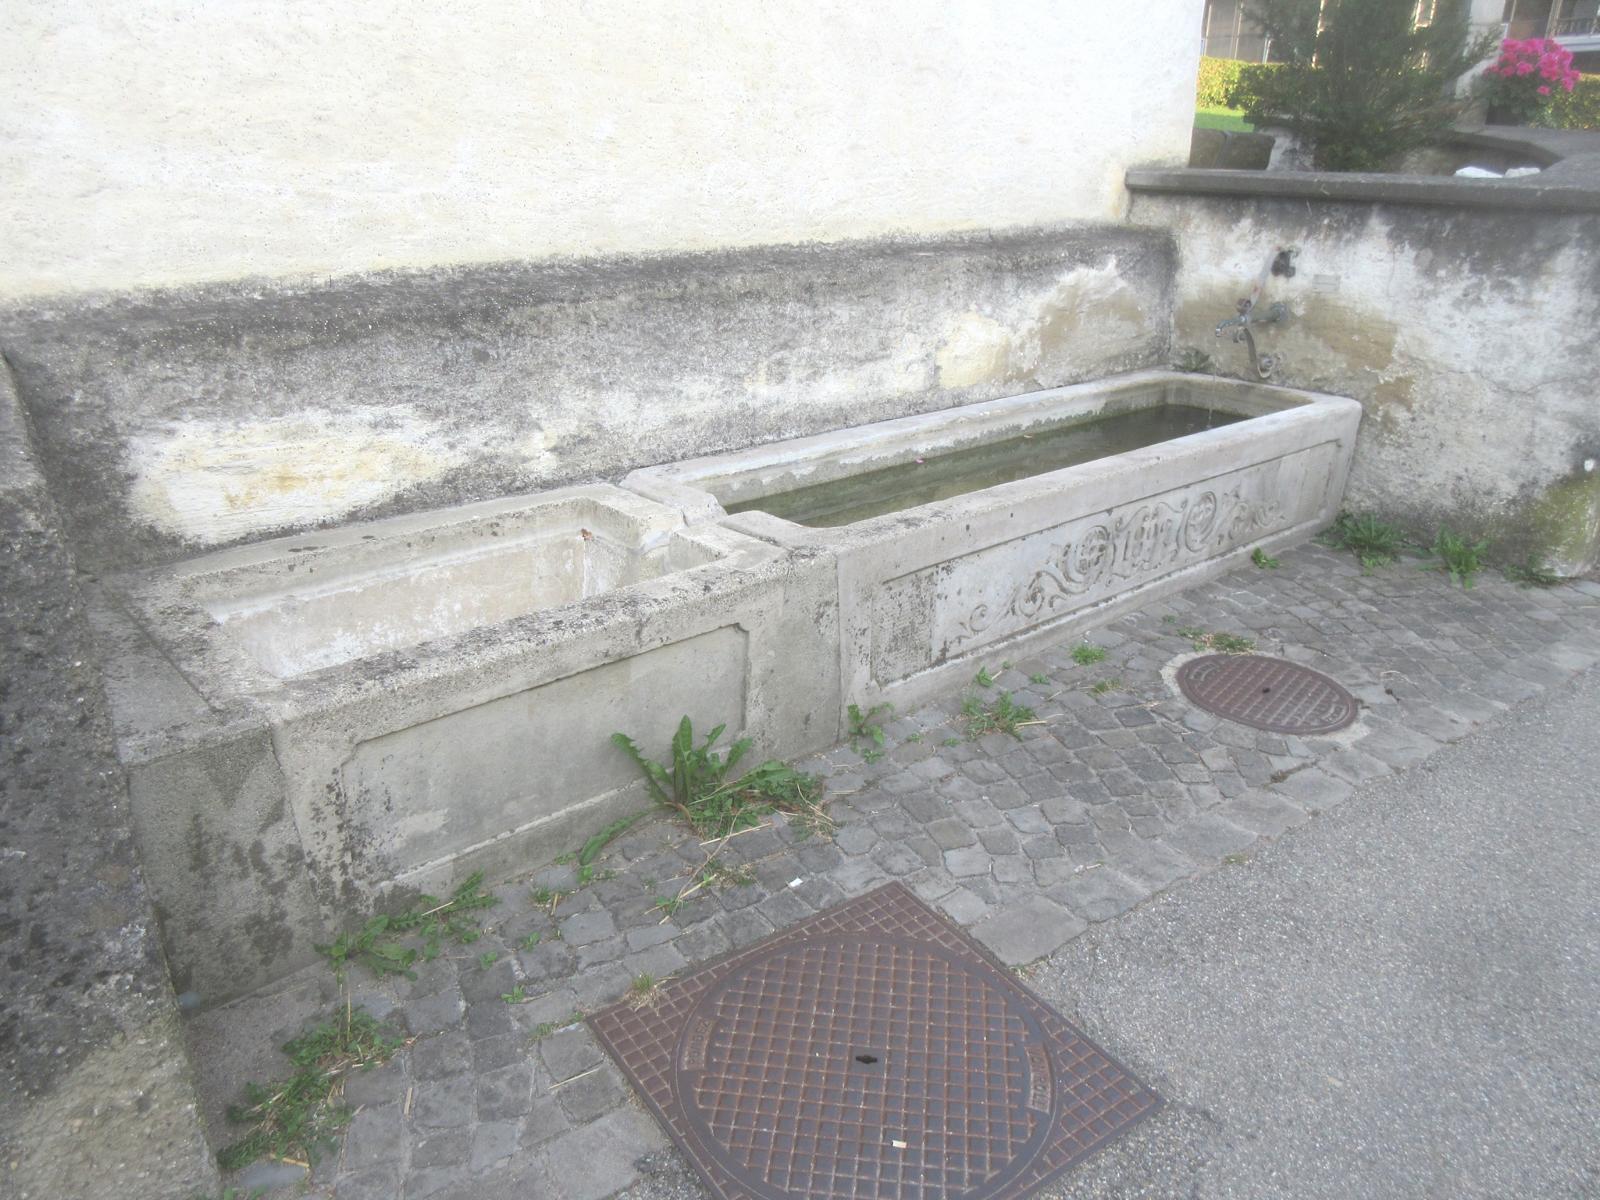 Laurenzenkapelle *** 1892; Jahrzahl in verziertem Spiegel *** Beton; Haupt- und Sudelbecken *** Stahl *** "Kein Trinkwasser"